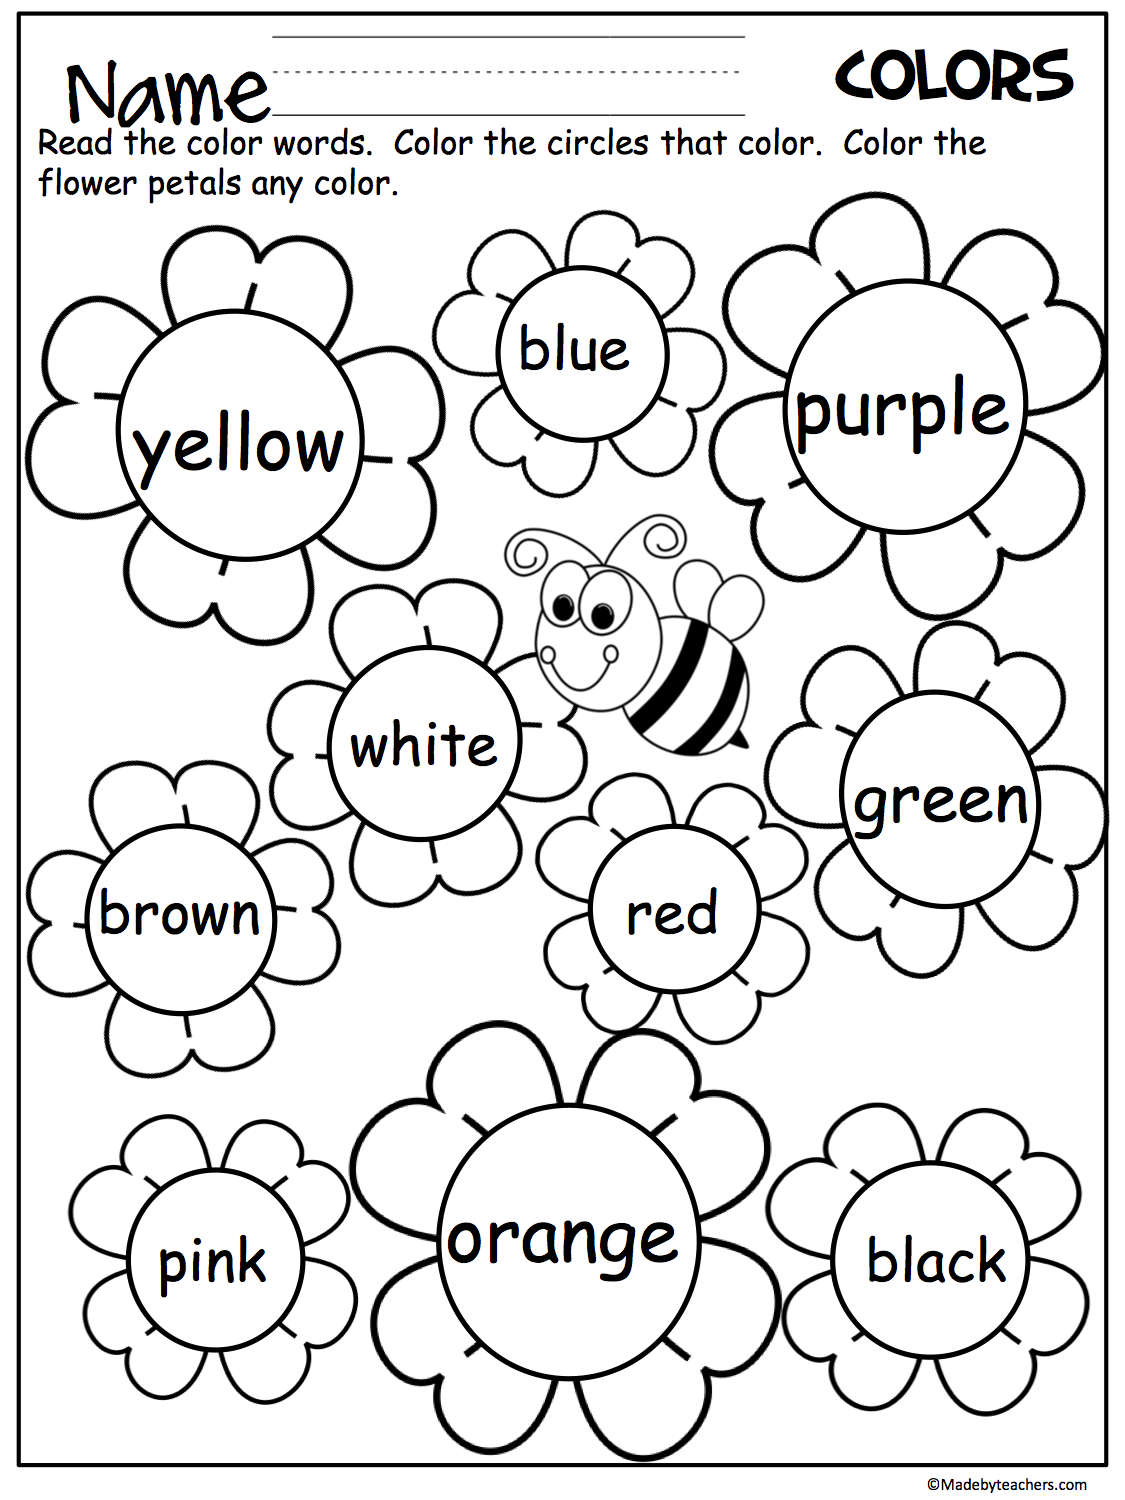 Flower Color Words Worksheet - Madebyteachers | Teaching